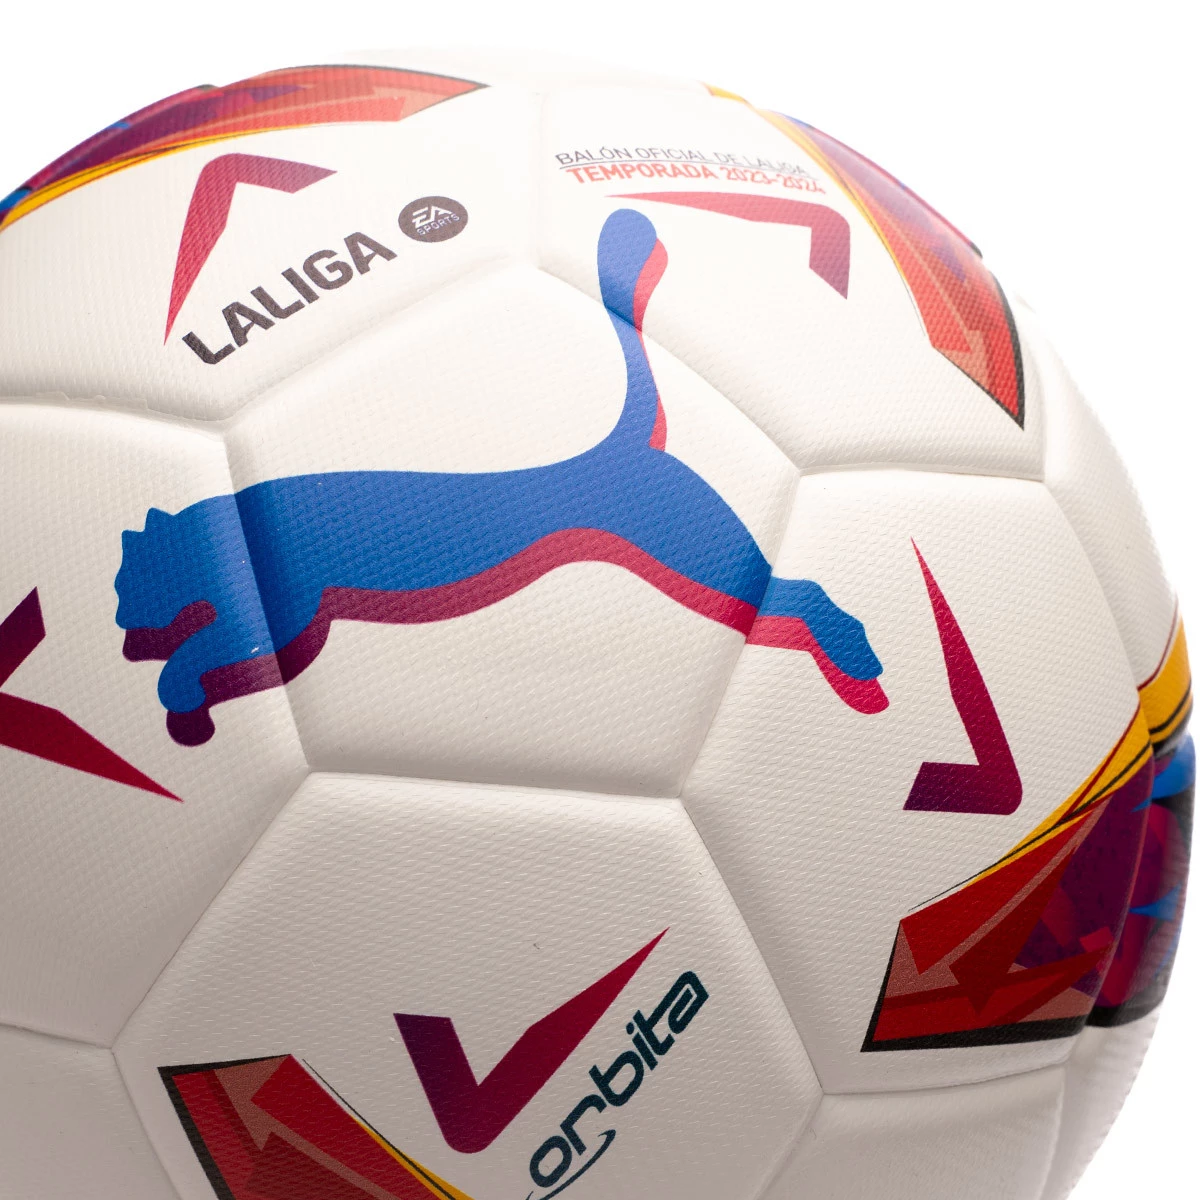 Nuevo Balón de Invierno para La Liga Puma Orbita - Blogs - Fútbol Emotion